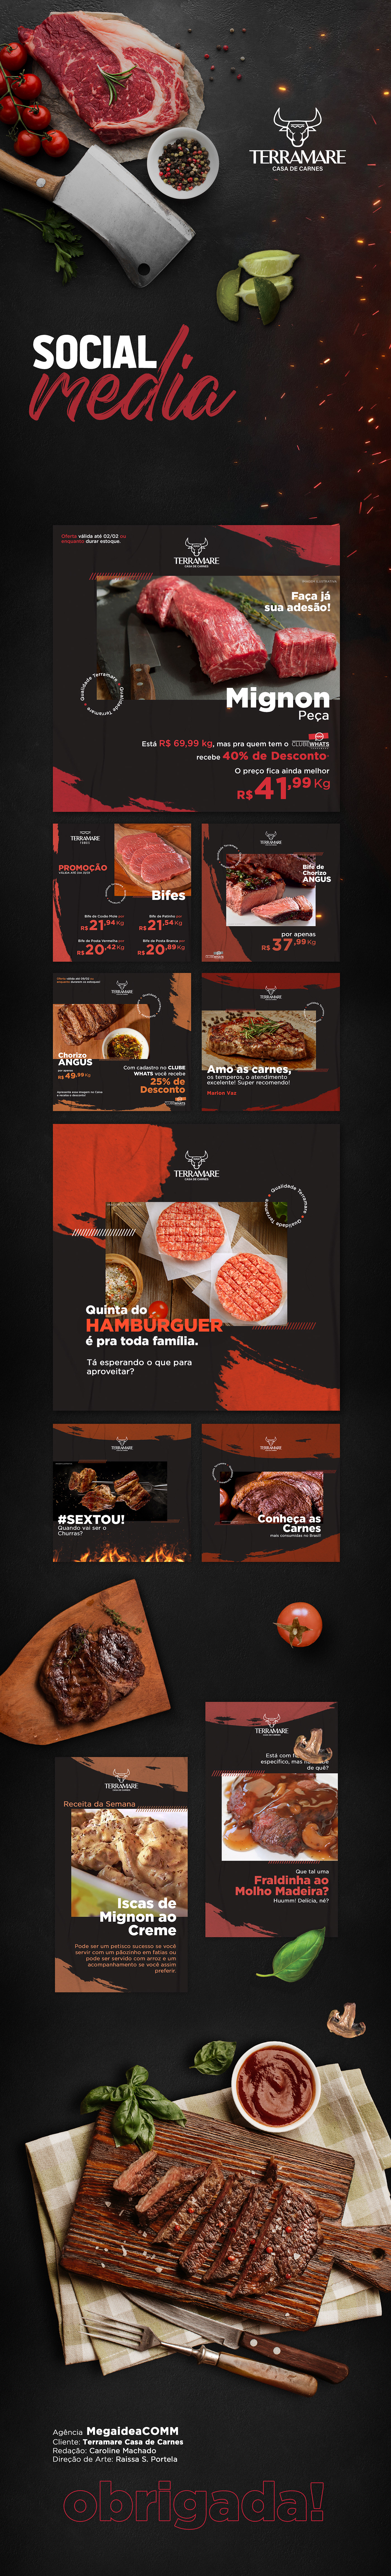 carne casa de carnes criação design Direção de arte marca meat social media Steakhouse terramare